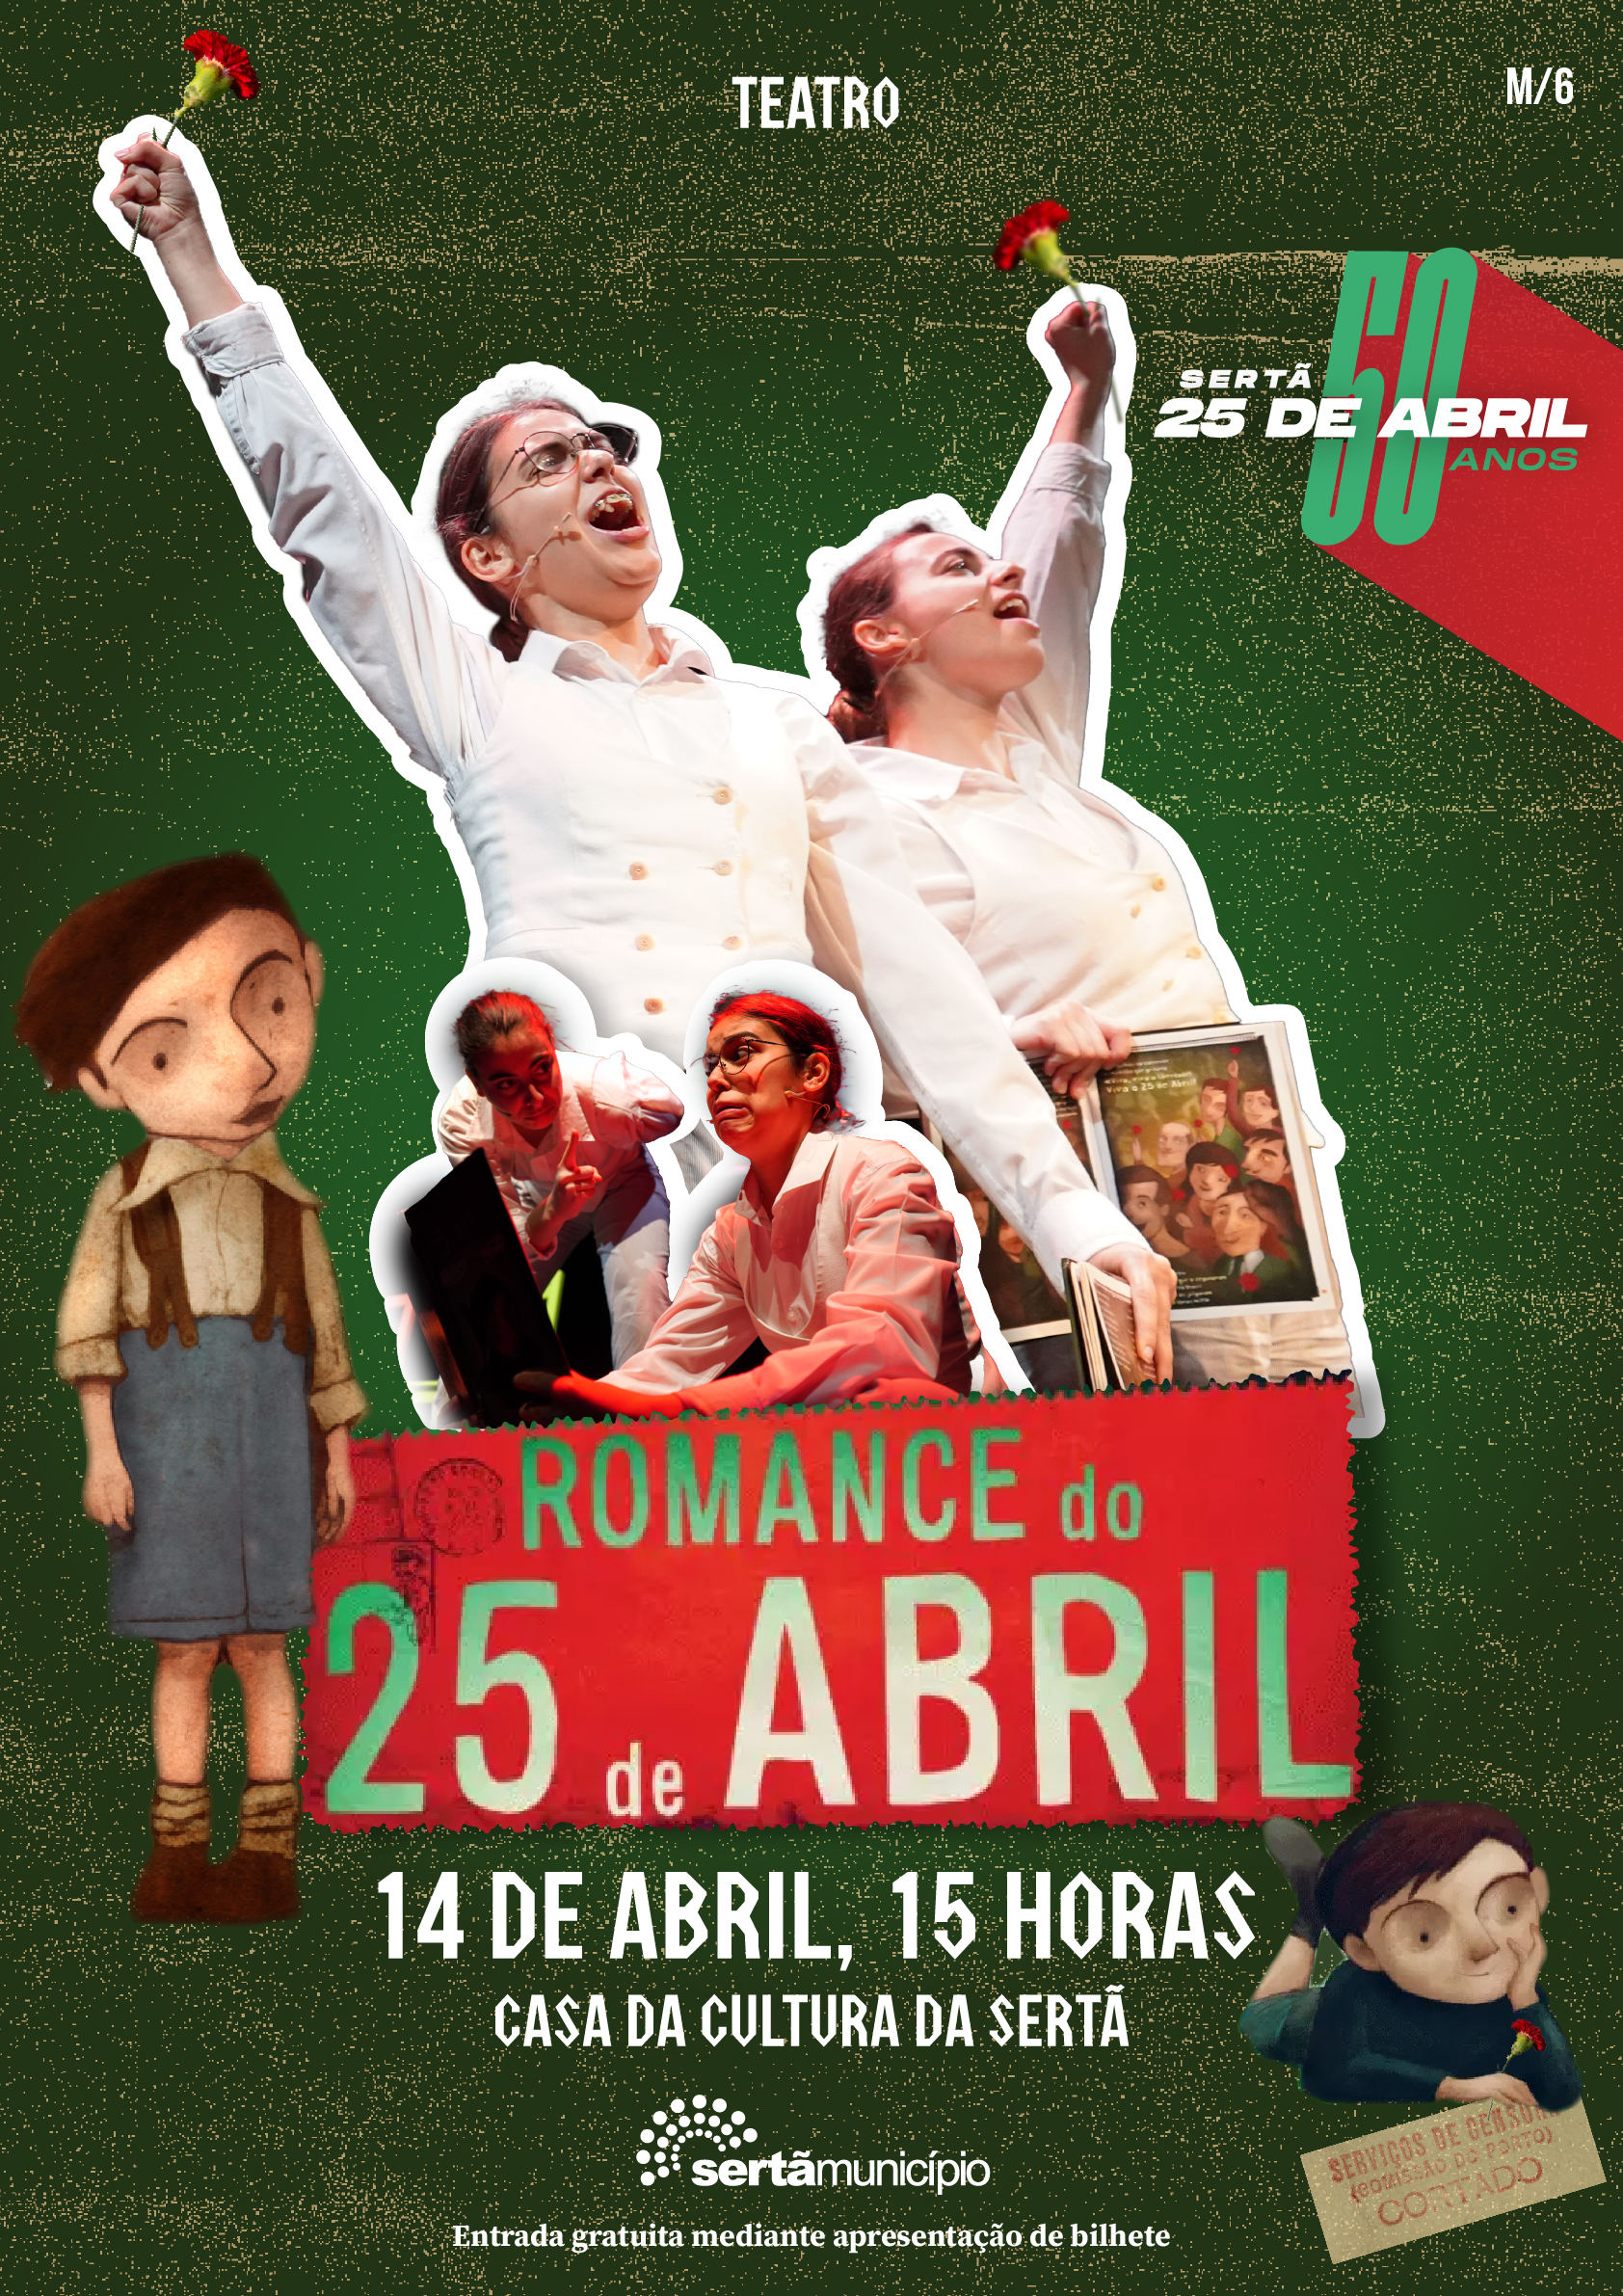 Capa Oficial do Evento Teatro “Romance do 25 de Abril”